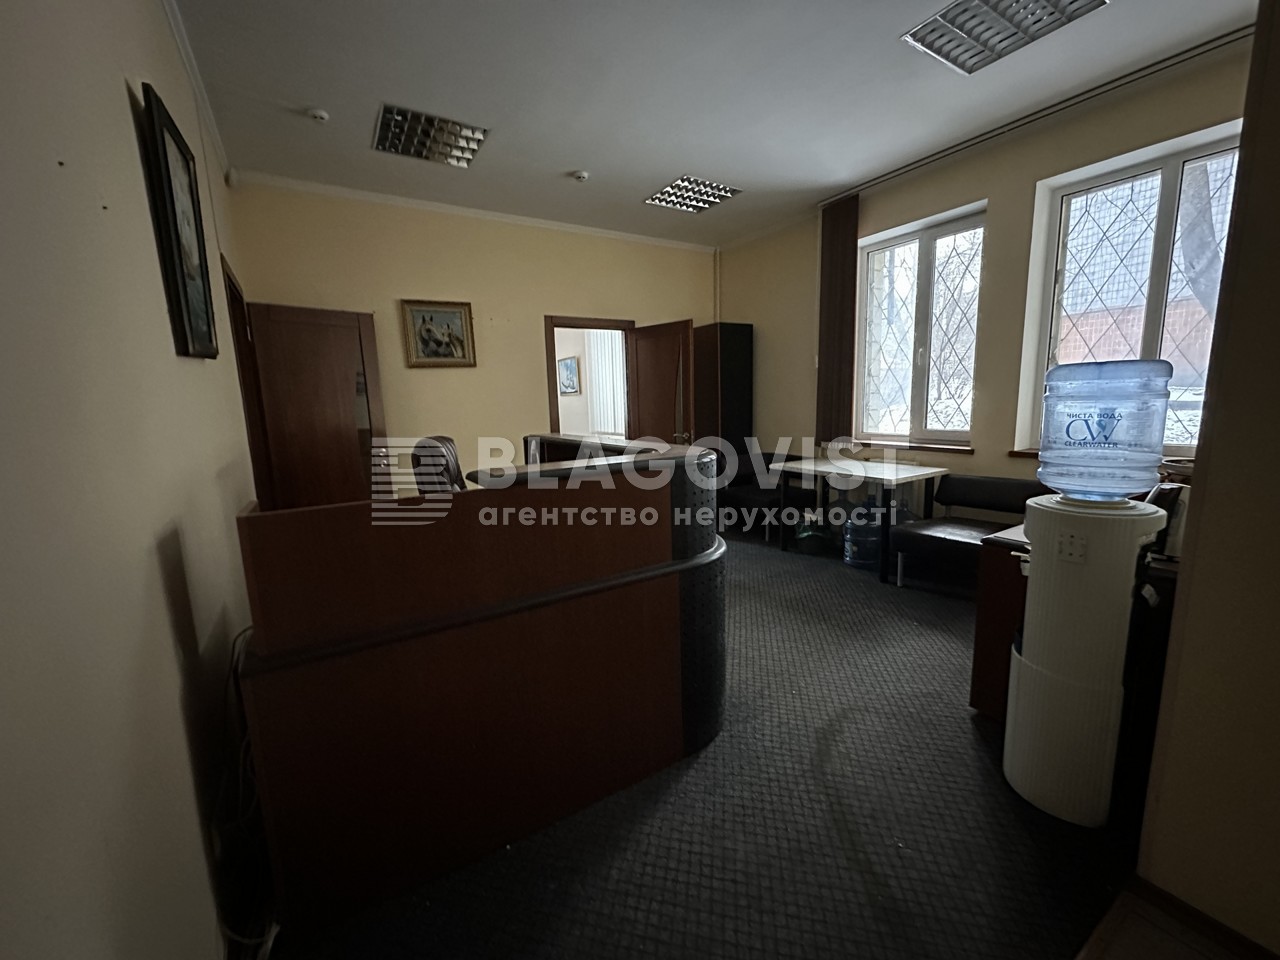  Нежилое помещение, P-31322, Тупикова Генерала, Киев - Фото 9